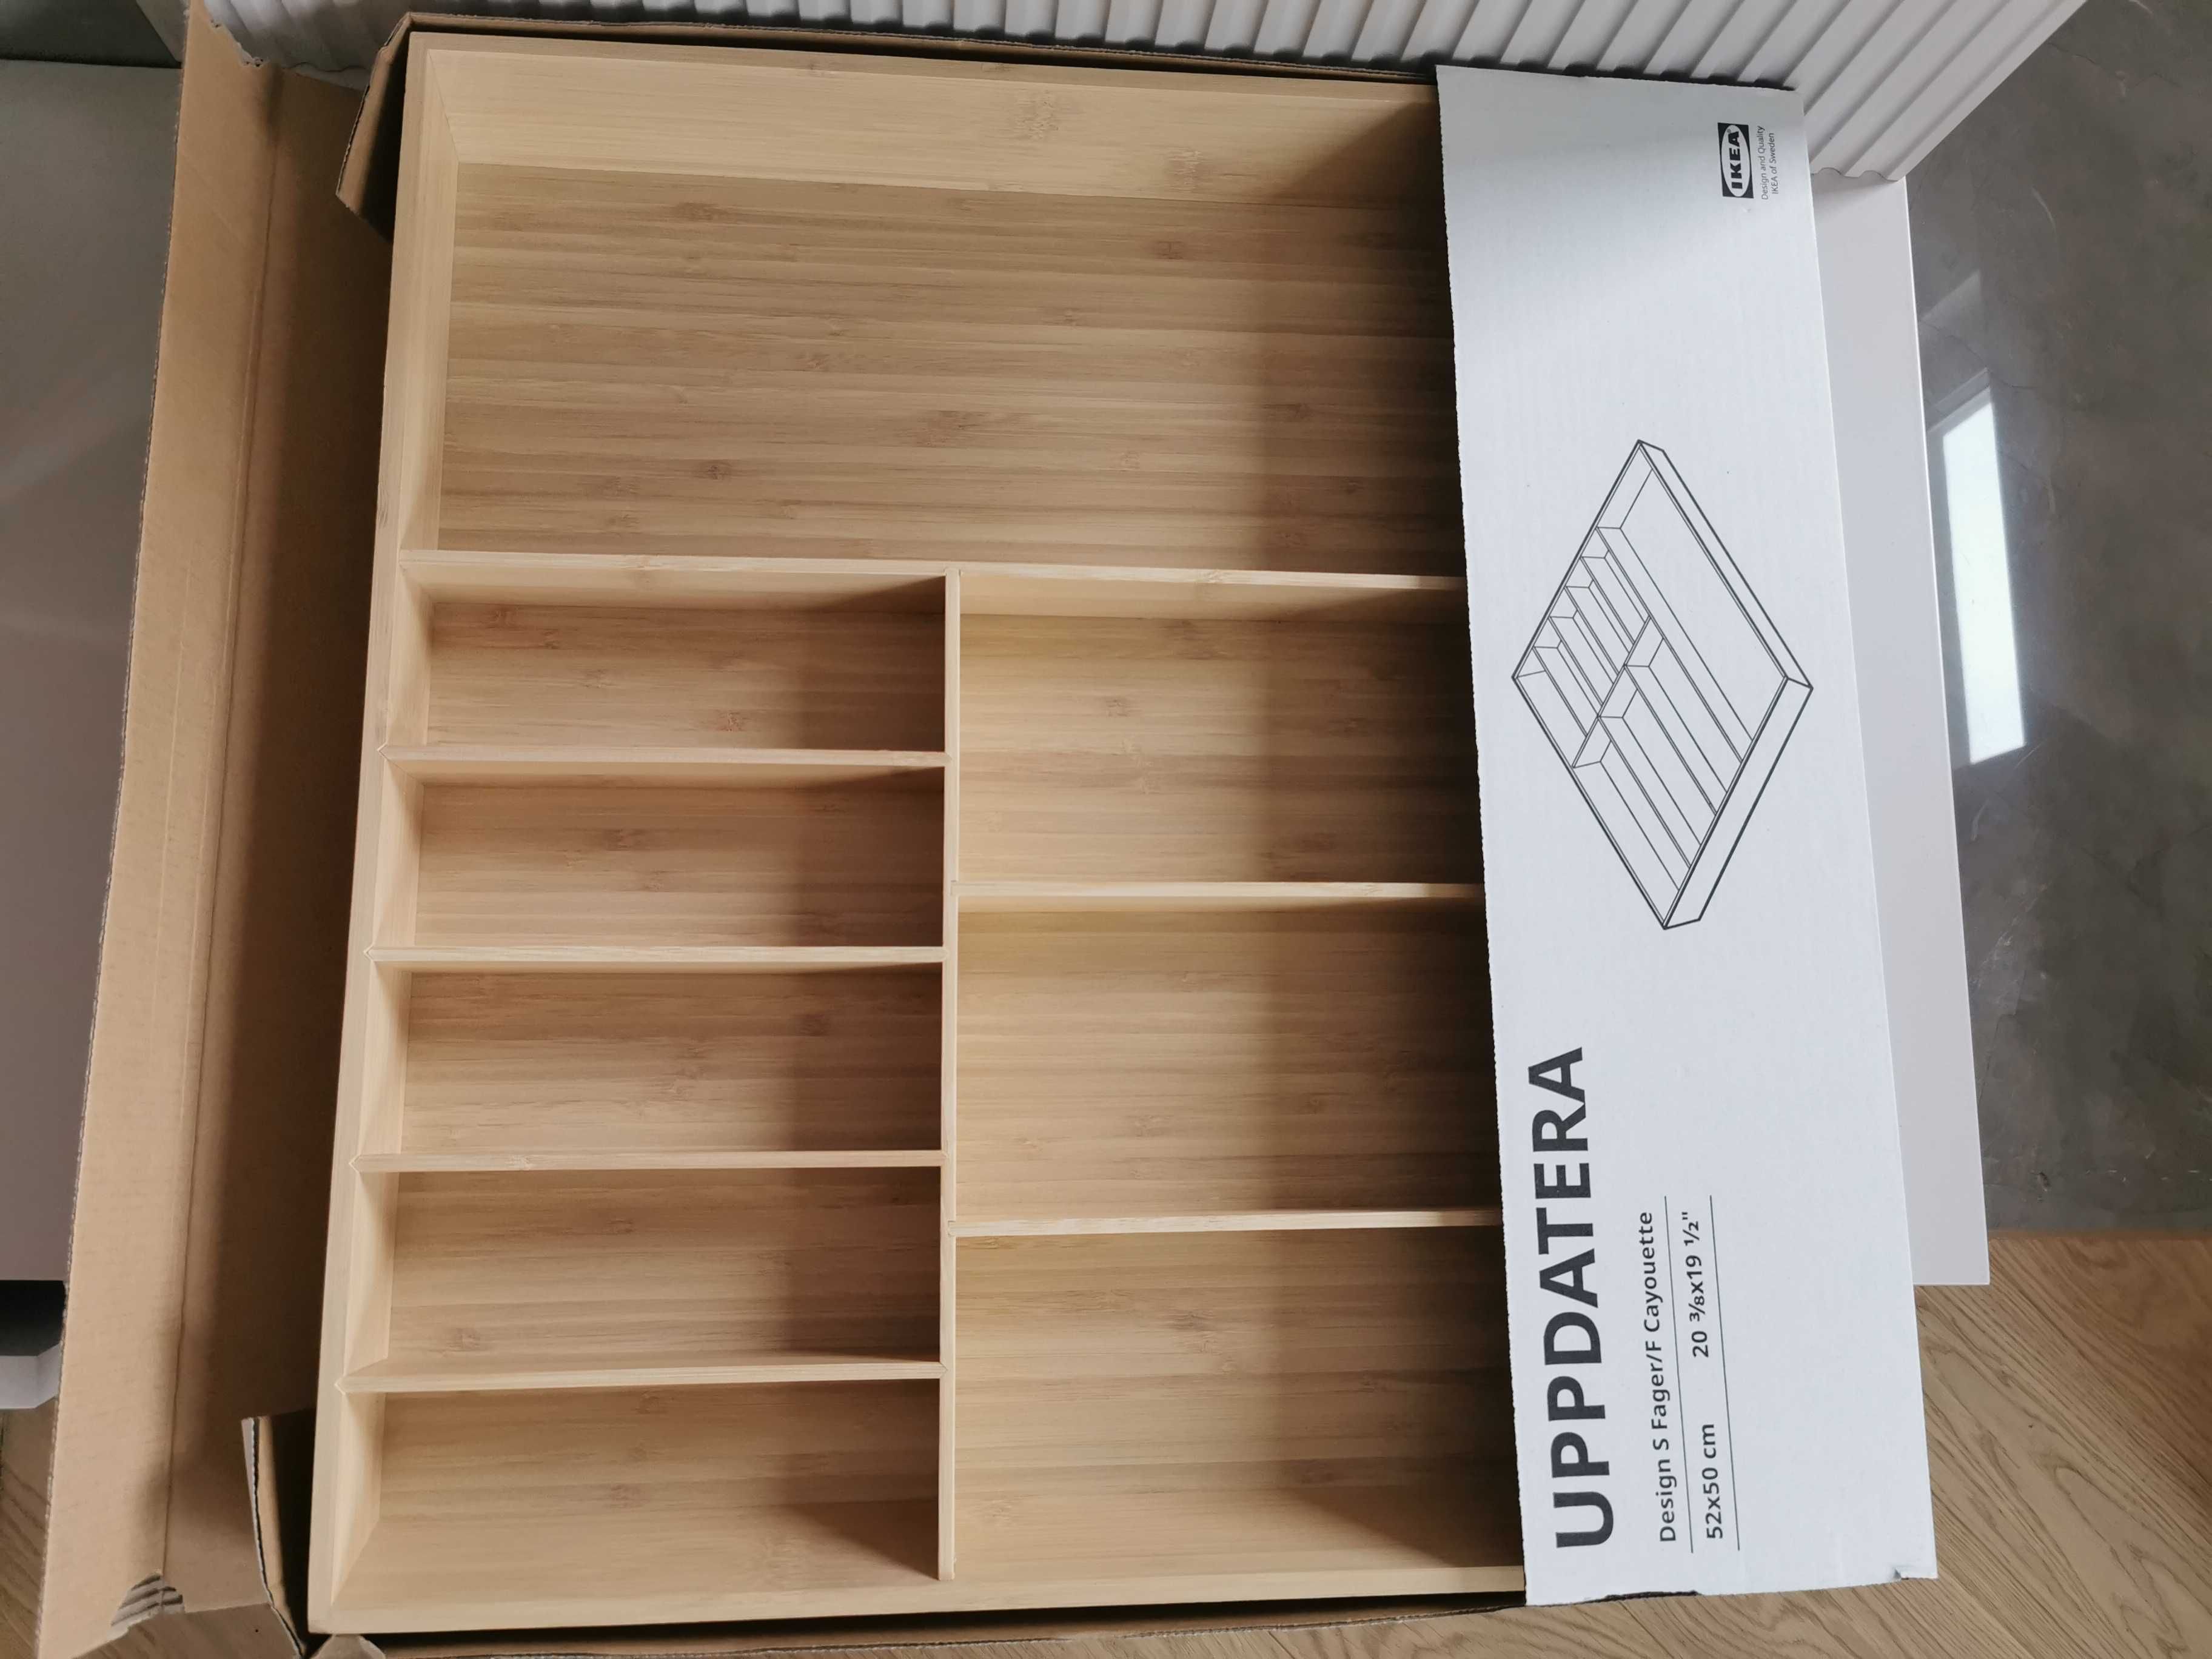 Nowy duży bambusowy organizer Uppdatera z Ikea do kuchni